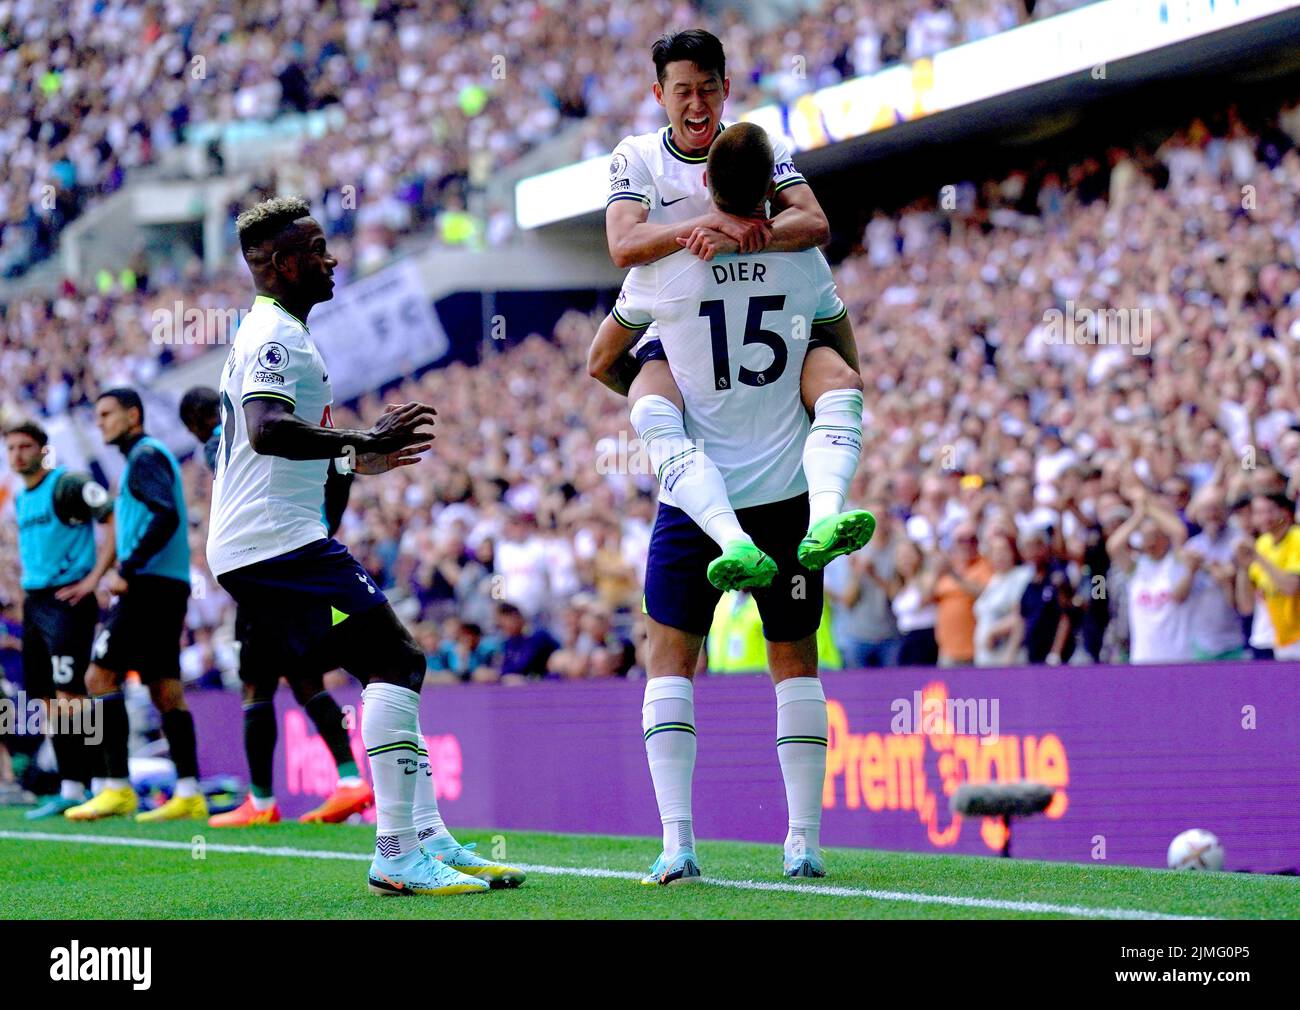 Eric Dier del Tottenham Hotspur celebra con su compañero de equipo Son Heung-min después de marcar el segundo gol de su equipo durante el partido de la Premier League en el Tottenham Hotspur Stadium, Londres. Fecha de la foto: Sábado 6 de agosto de 2022. Foto de stock